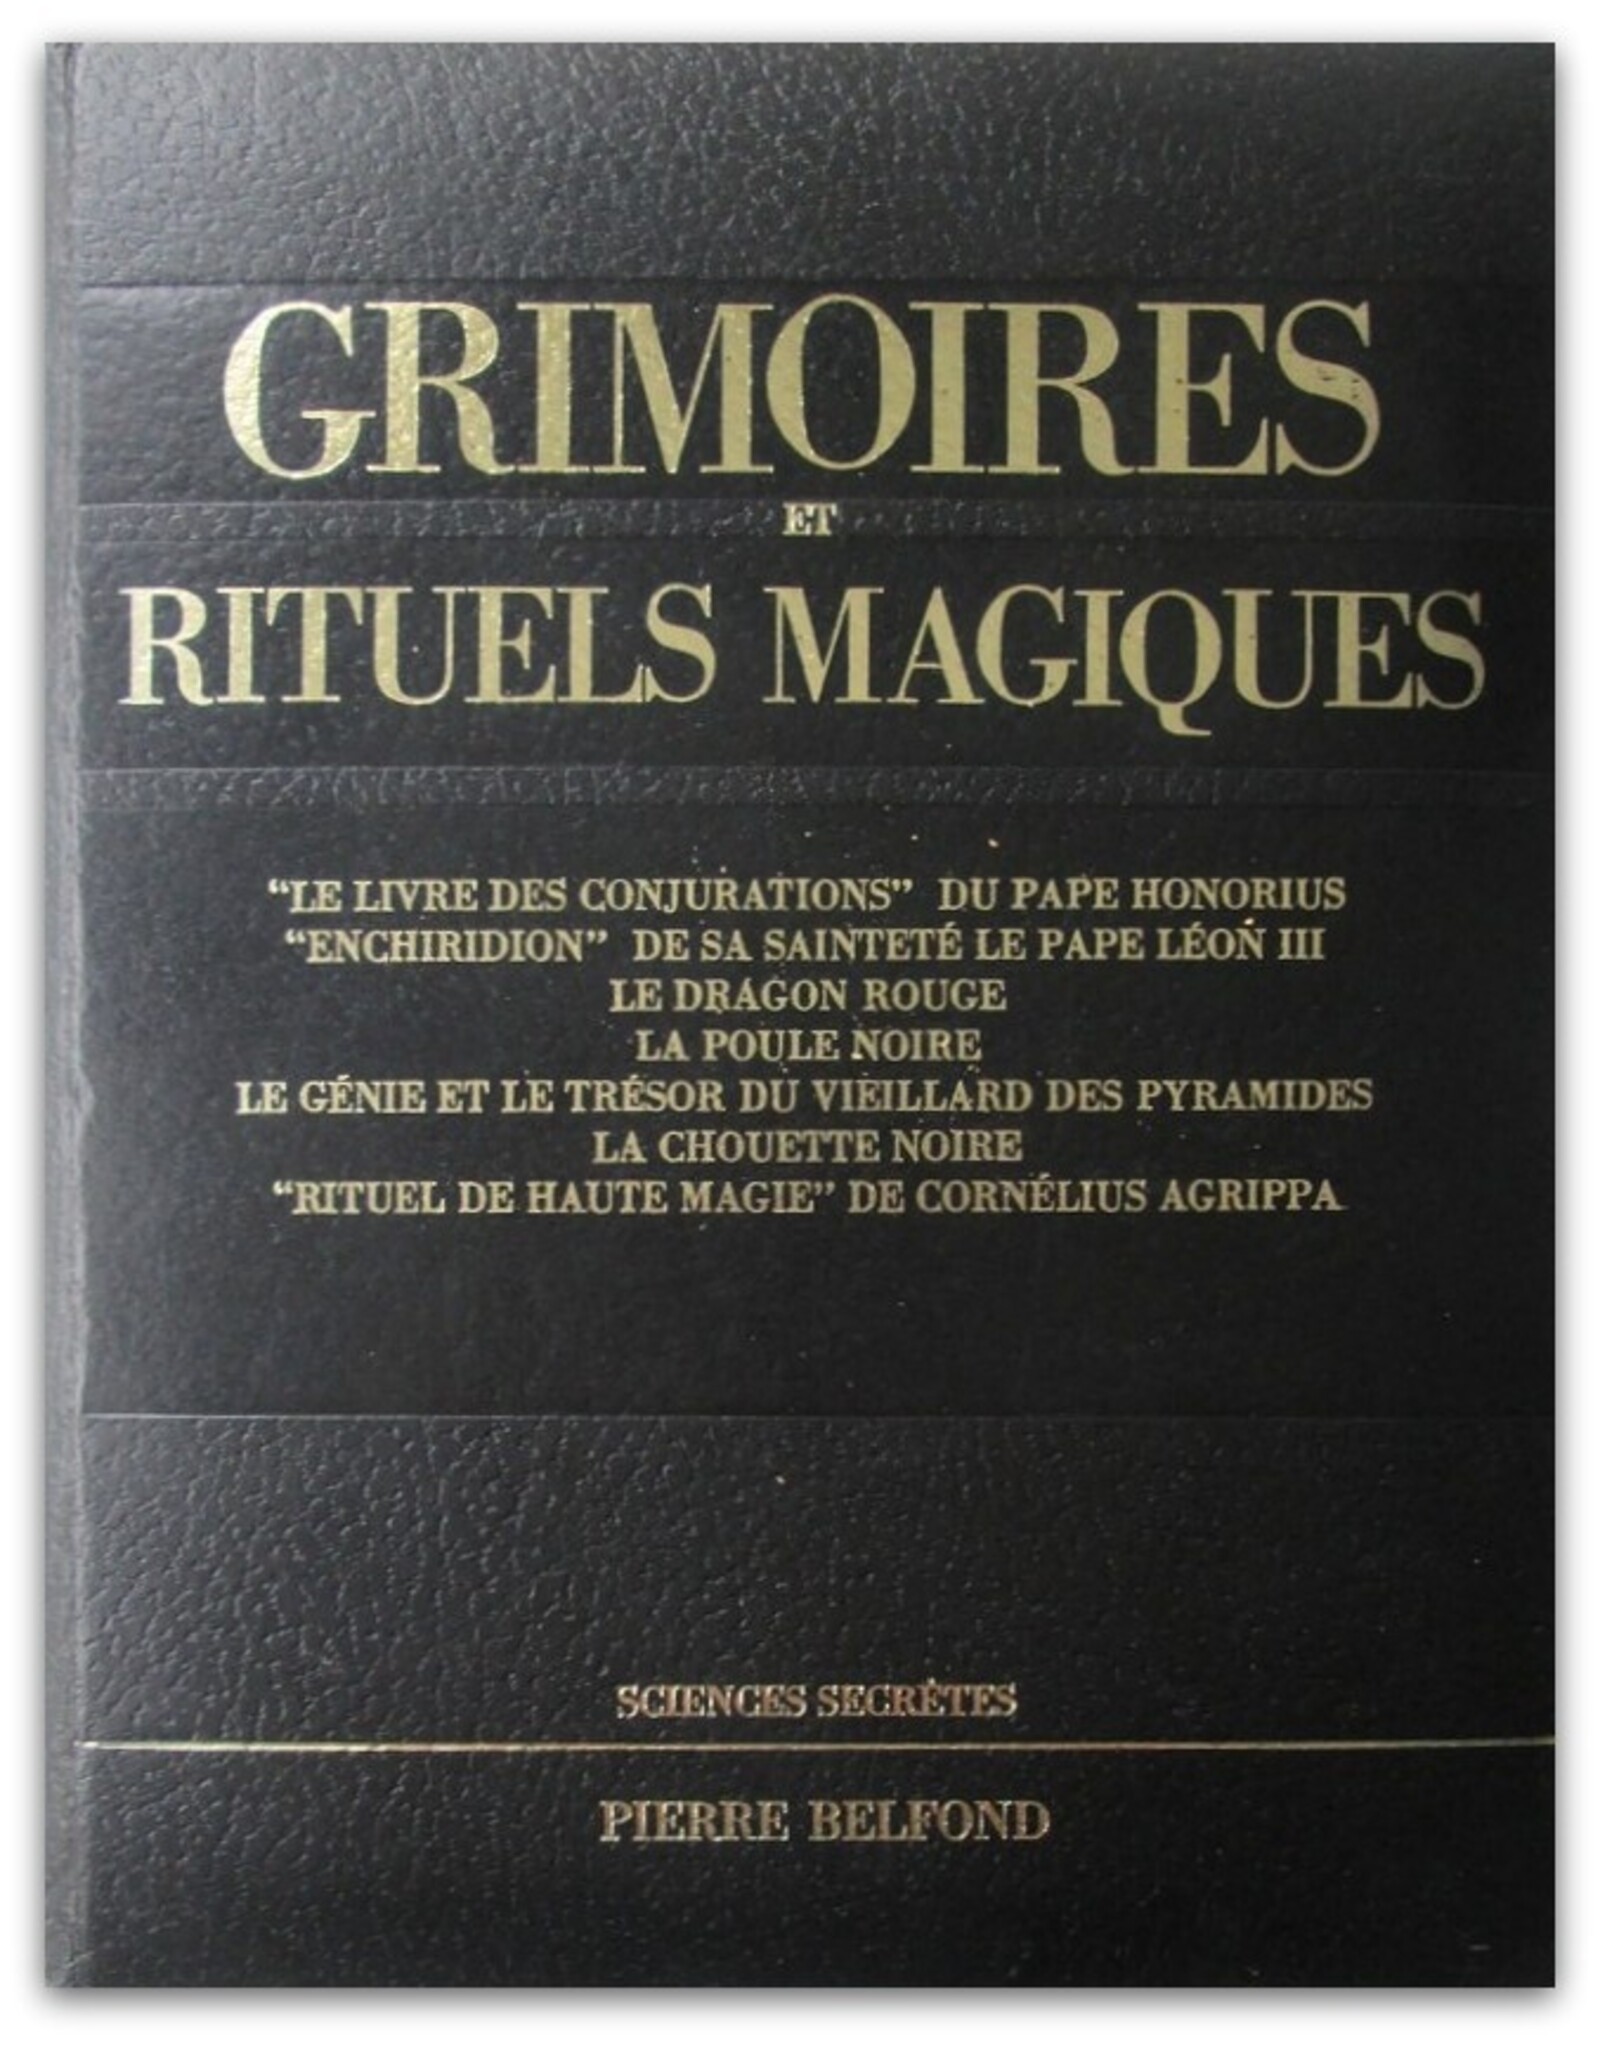 François Ribadeau Dumas - Grimoires et rituels magiques. Sciences secrètes